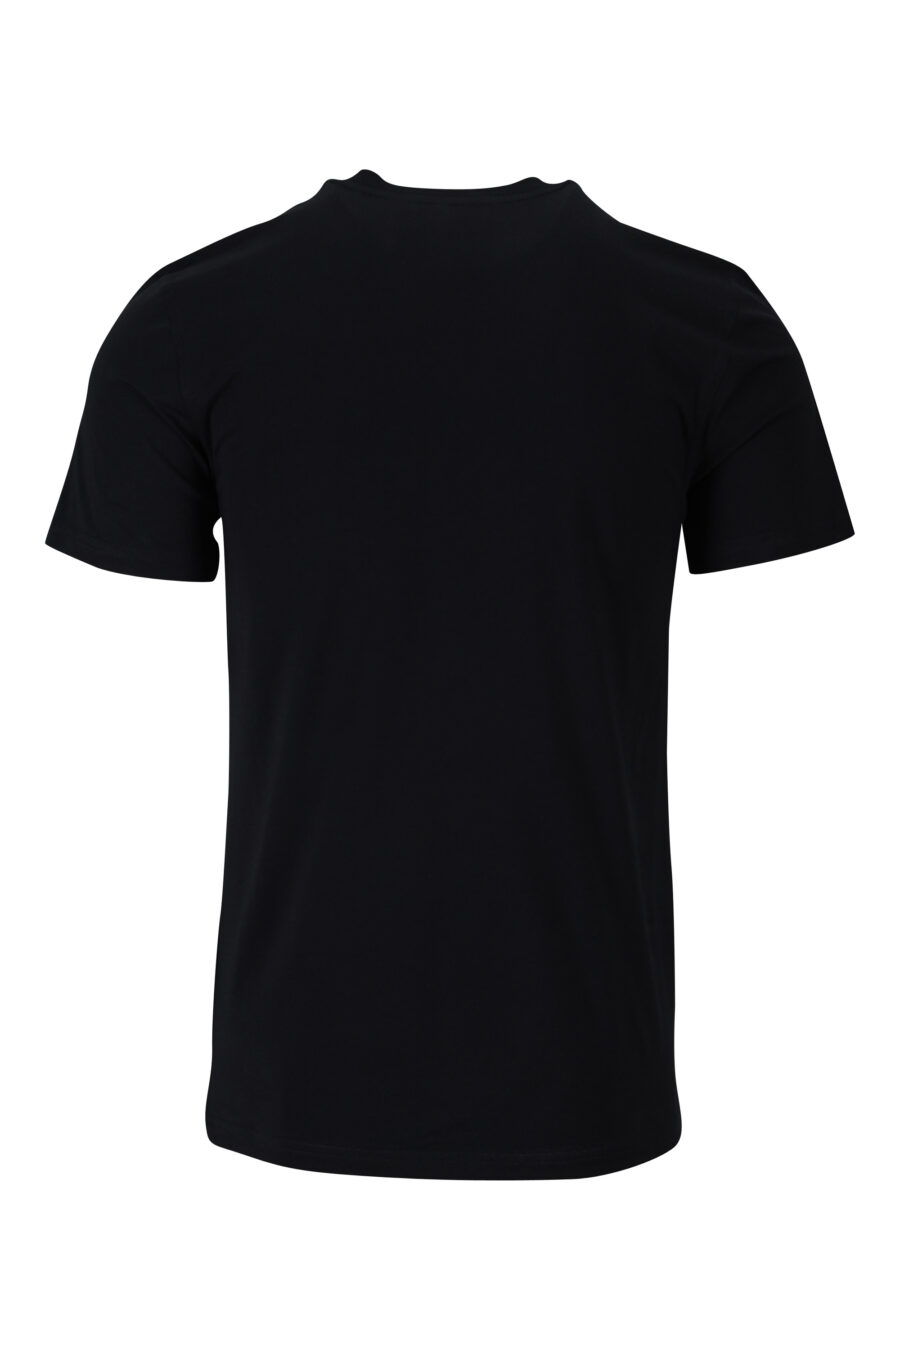 Schwarzes T-Shirt mit Öko-Baumwolle mit Mini-Logo "teddy" - 889316853124 1